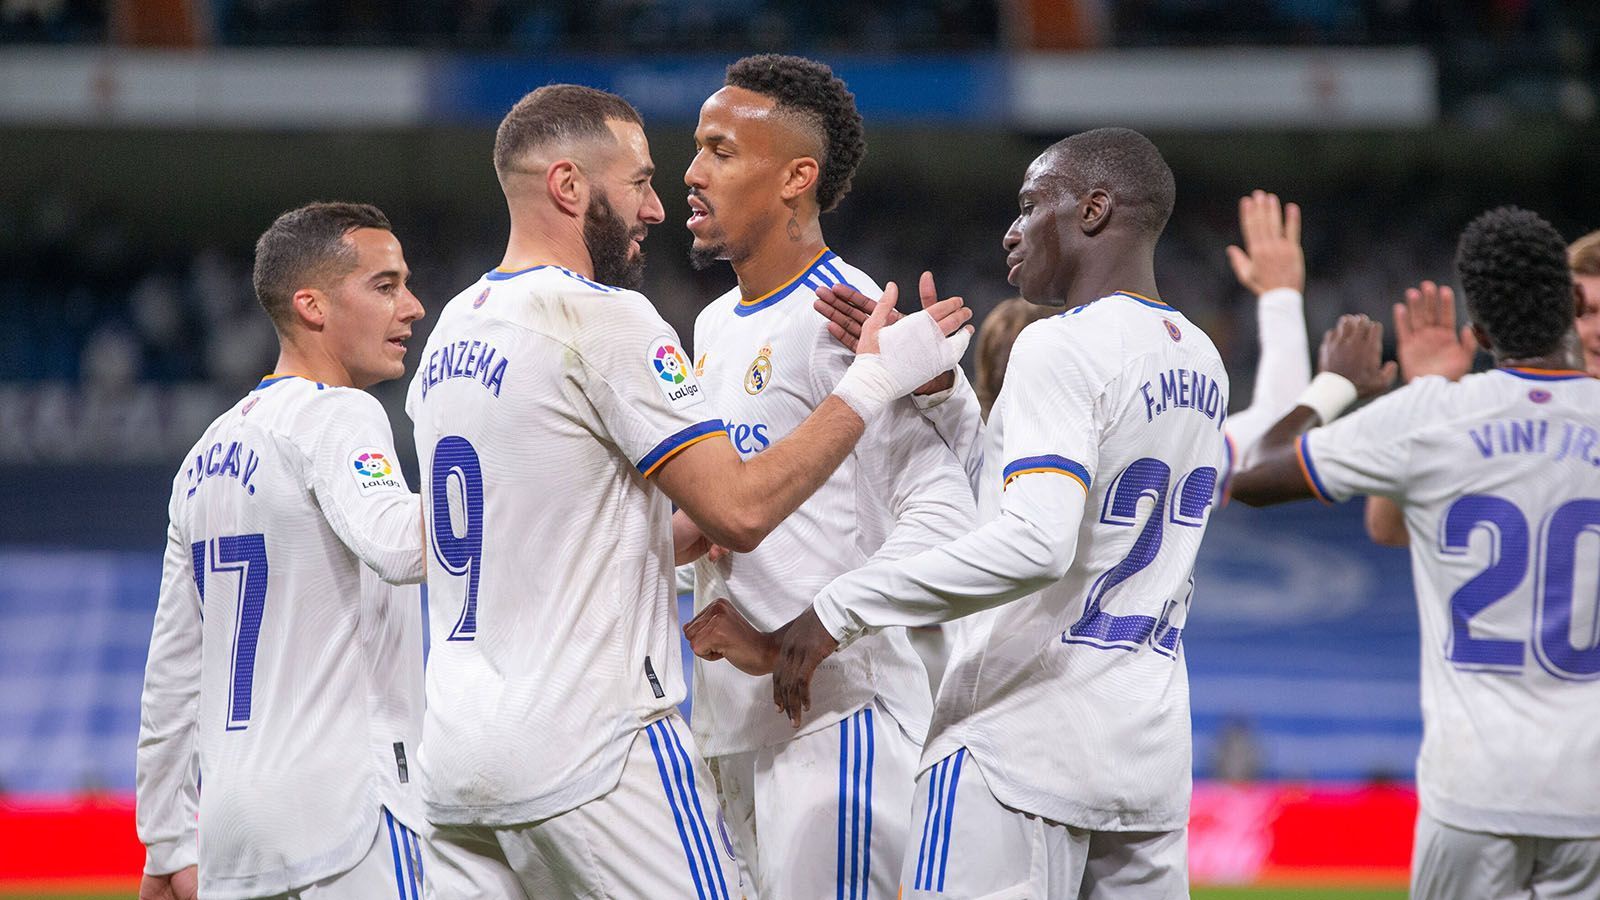 
                <strong>4. Platz: Real Madrid </strong><br>
                Einen Platz vor Atletico reiht sich der Rivale ein. Real Madrid kann in der spanischen Liga schon fast die Meisterschaft feiern (zwölf Punkte Vorsprung auf Barcelona), kam zuletzt im "Clasico" aber mit 0:4 (erste LaLiga-Niederlage seit dem 2. Januar) unter die Räder. Trotzdem gehen die Königlichen gegen den FC Chelsea als Favorit in die Begegnungen. Im Achtelfinal-Rückspiel gegen PSG sorgte Karim Benzema mit seinem Dreierpack quasi im Alleingang für das Weiterkommen. Der 34-Jährige spielt ohnehin eine Fabelsaison. Mit 47 Scorerpunkten in 35 Spielen ist der Franzose Dreh- und Angelpunkt der Offensive.
              